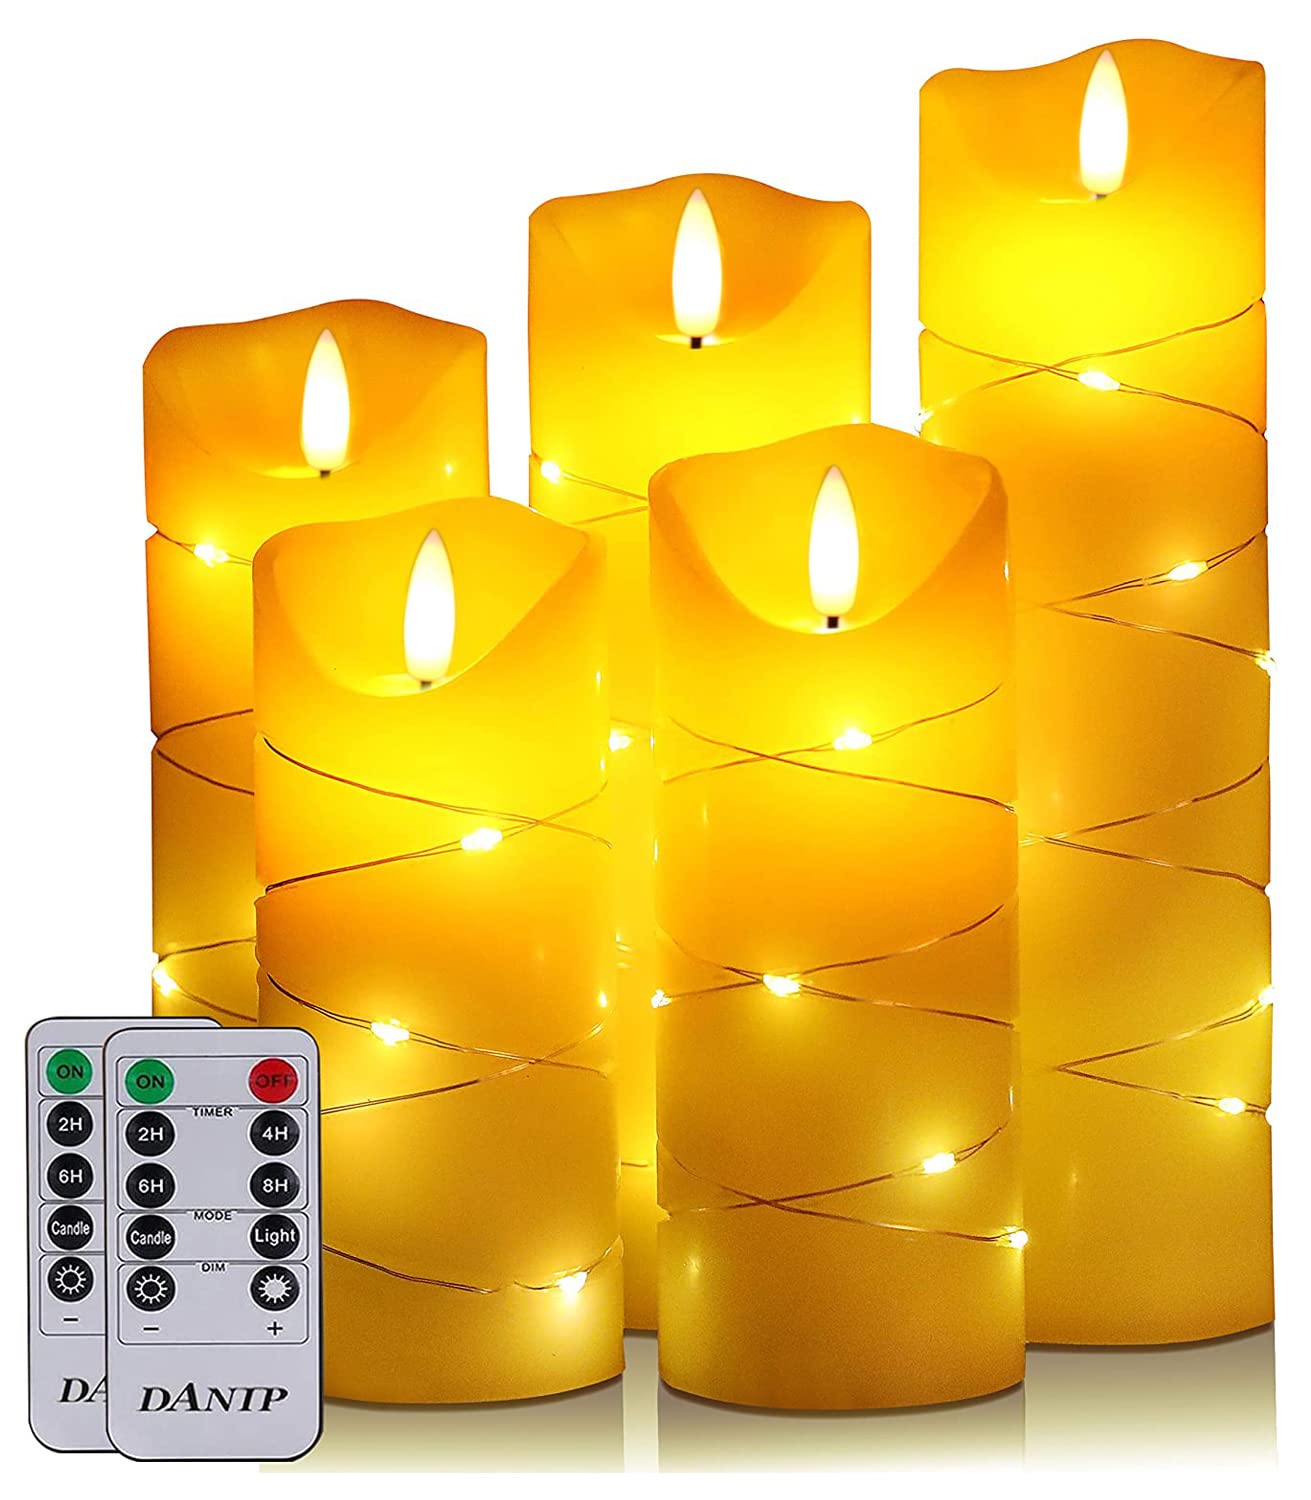 DANIP LED flammenlose Kerze, eingebettetes Lichterketten-Licht, 5-teiliges Set, 11-Knopf-Fernbedienung, 24-Stunden-Timer-Funktion, tanzende Flamme, echtes Wachs, batteriebetrieben. (Weiß)